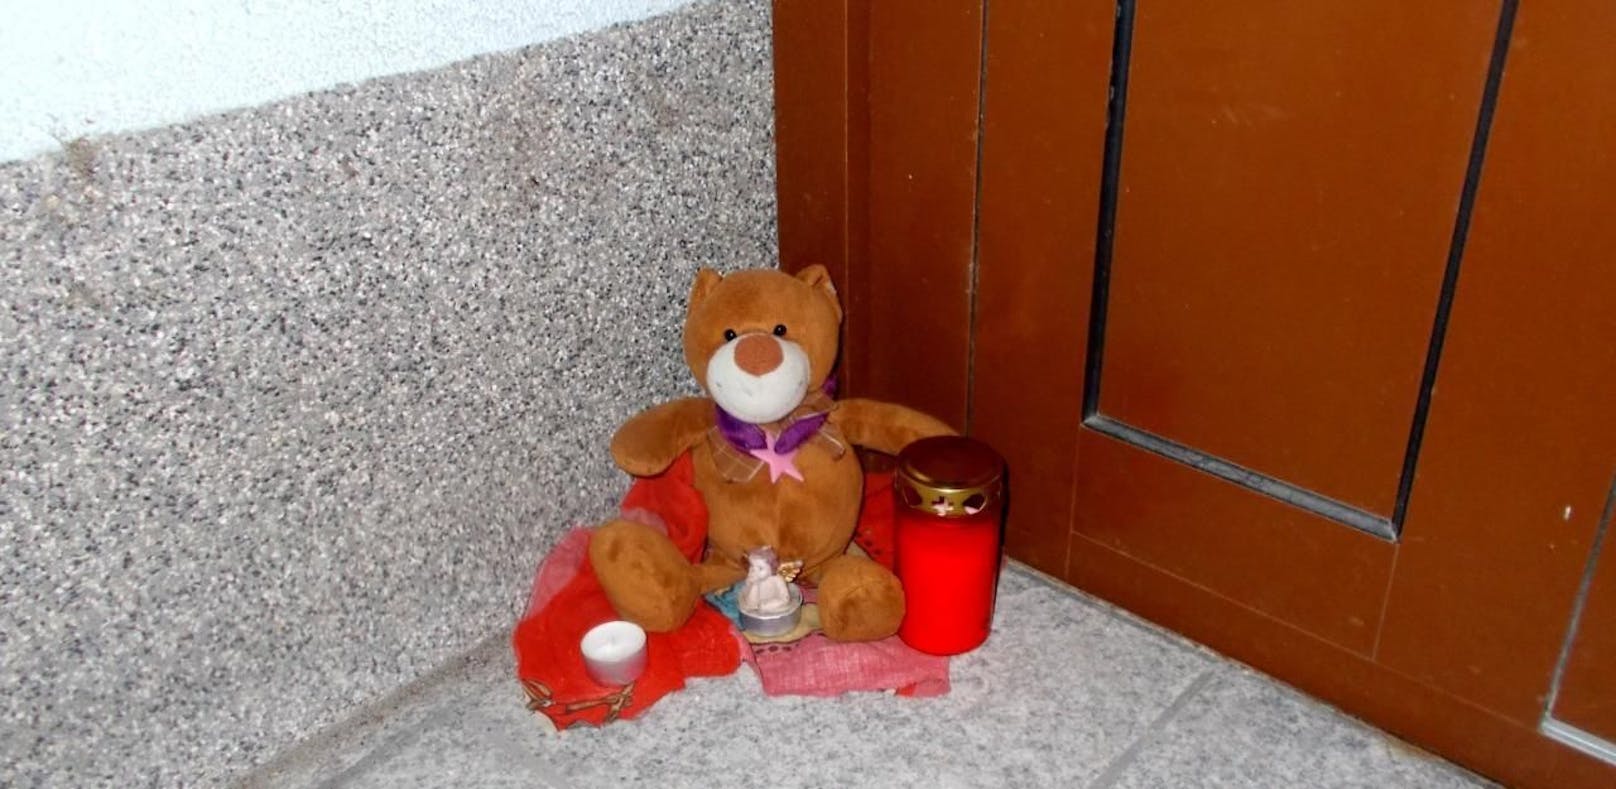 Ein Teddy am Tatort erinnert an die Tragödie.